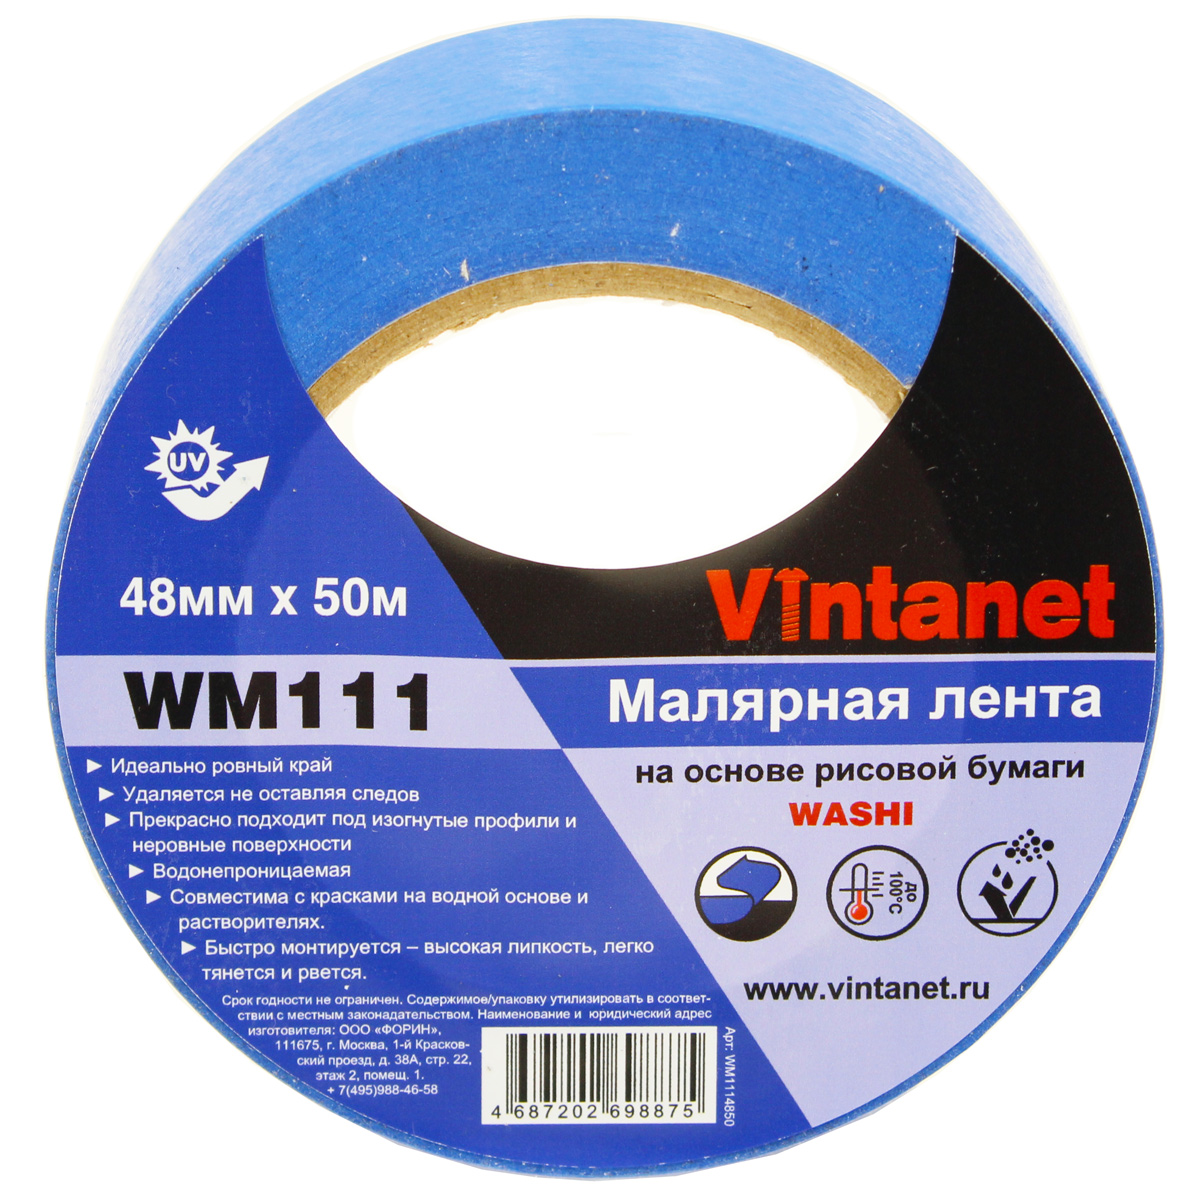 Лента малярная на основе рисовой бумаги Washi, Vintanet WM111, 48мм х 50м, WM1114850